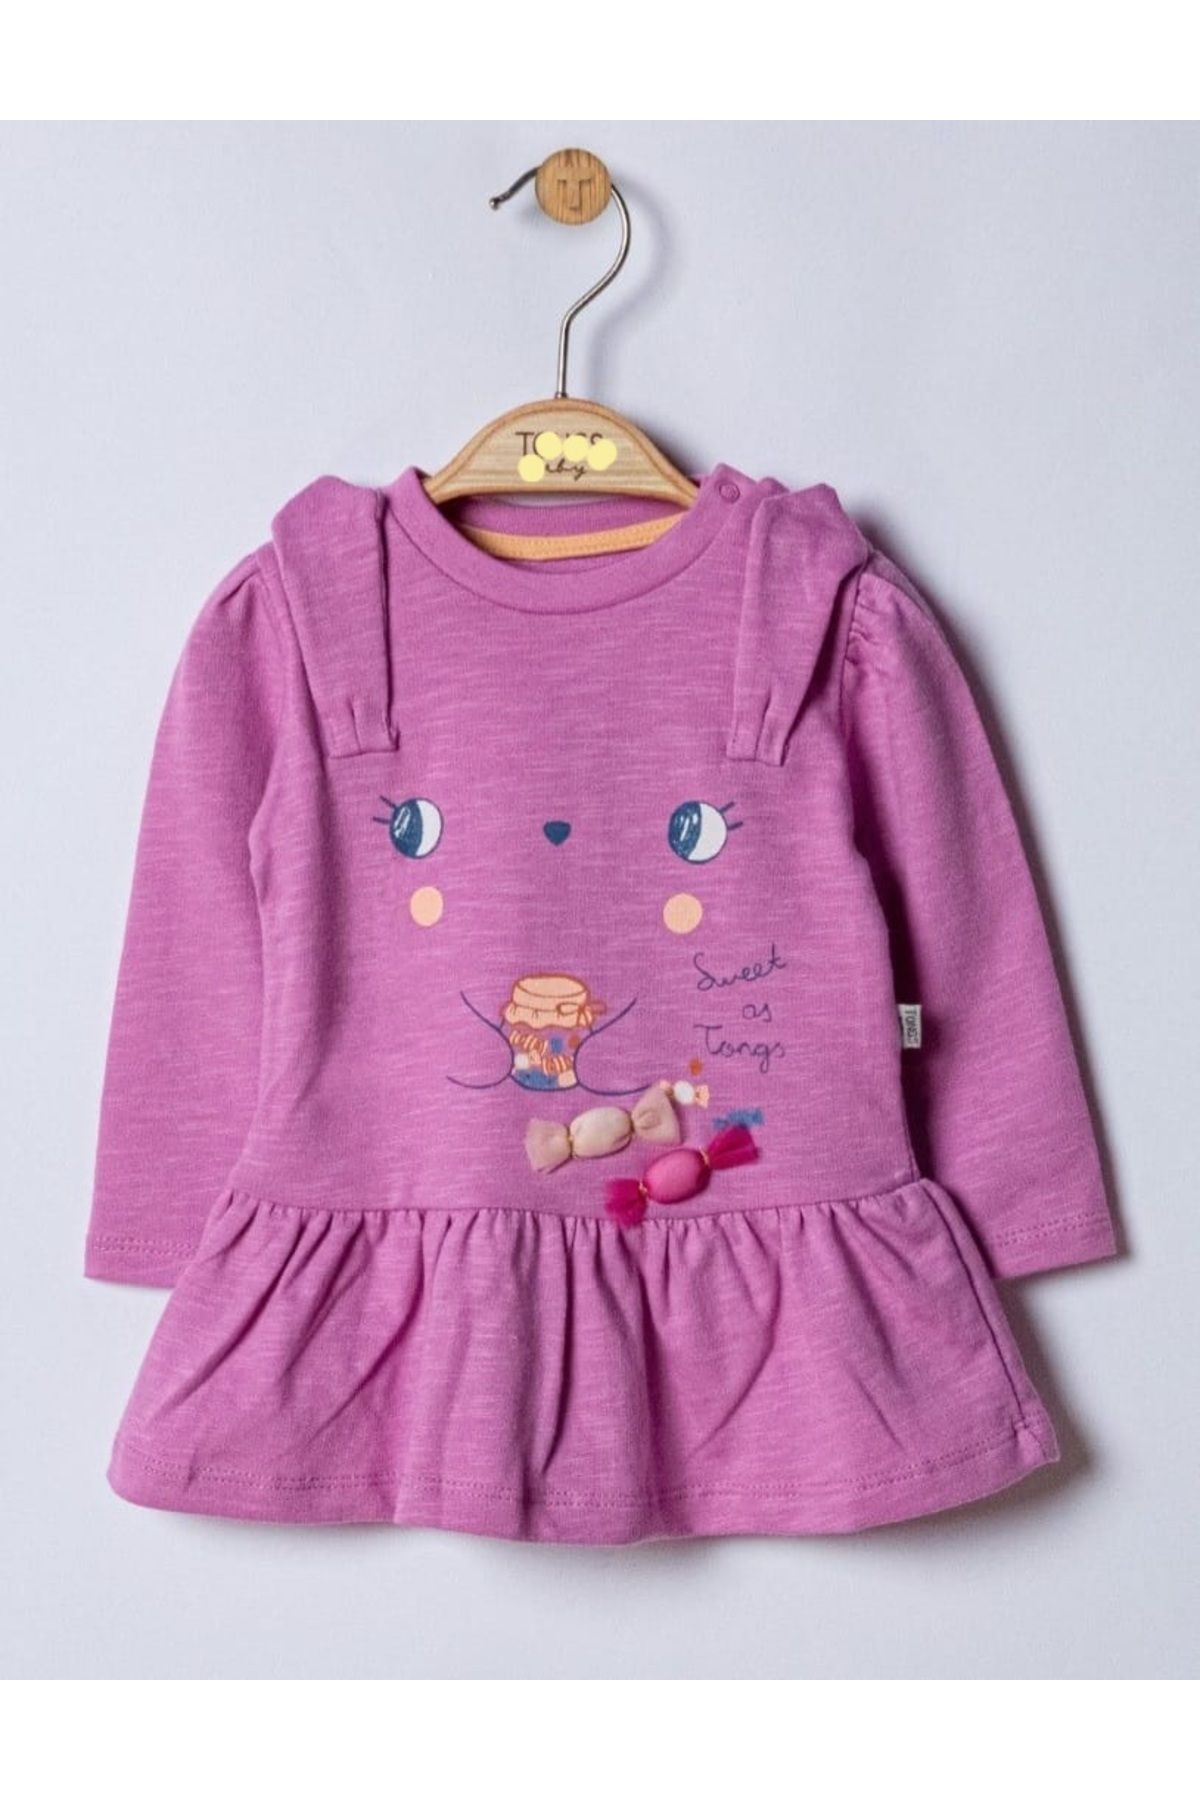 Esterella kız bebek büzgülü uzun kollu elbise/ 2 iplik bebek elbise/candy uzun kollu elbise